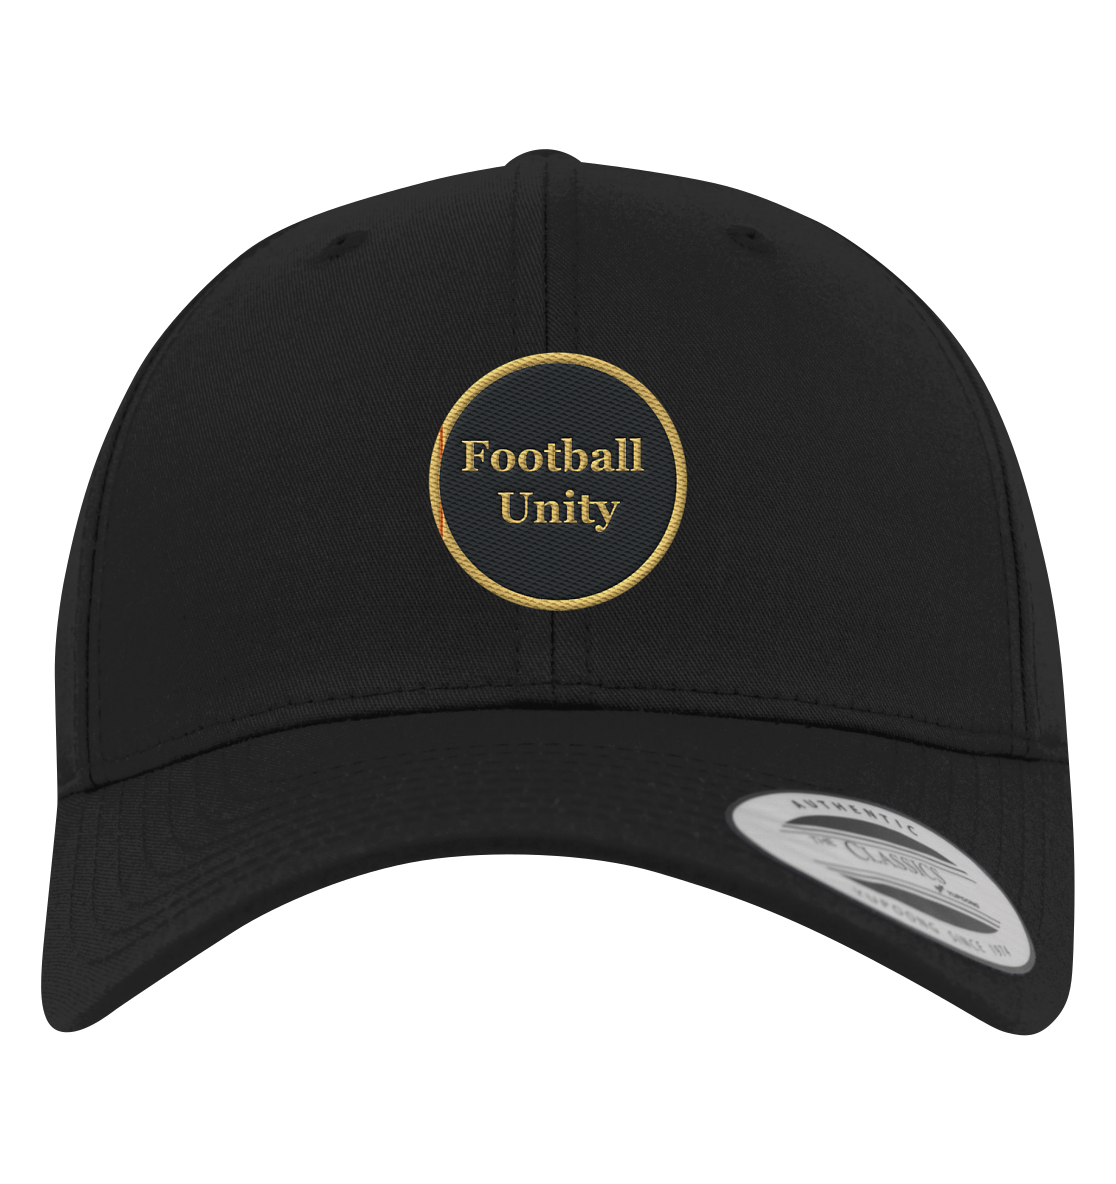 Football Unity Basecap - Premium Baseball Cap - Football Unity Football Unity